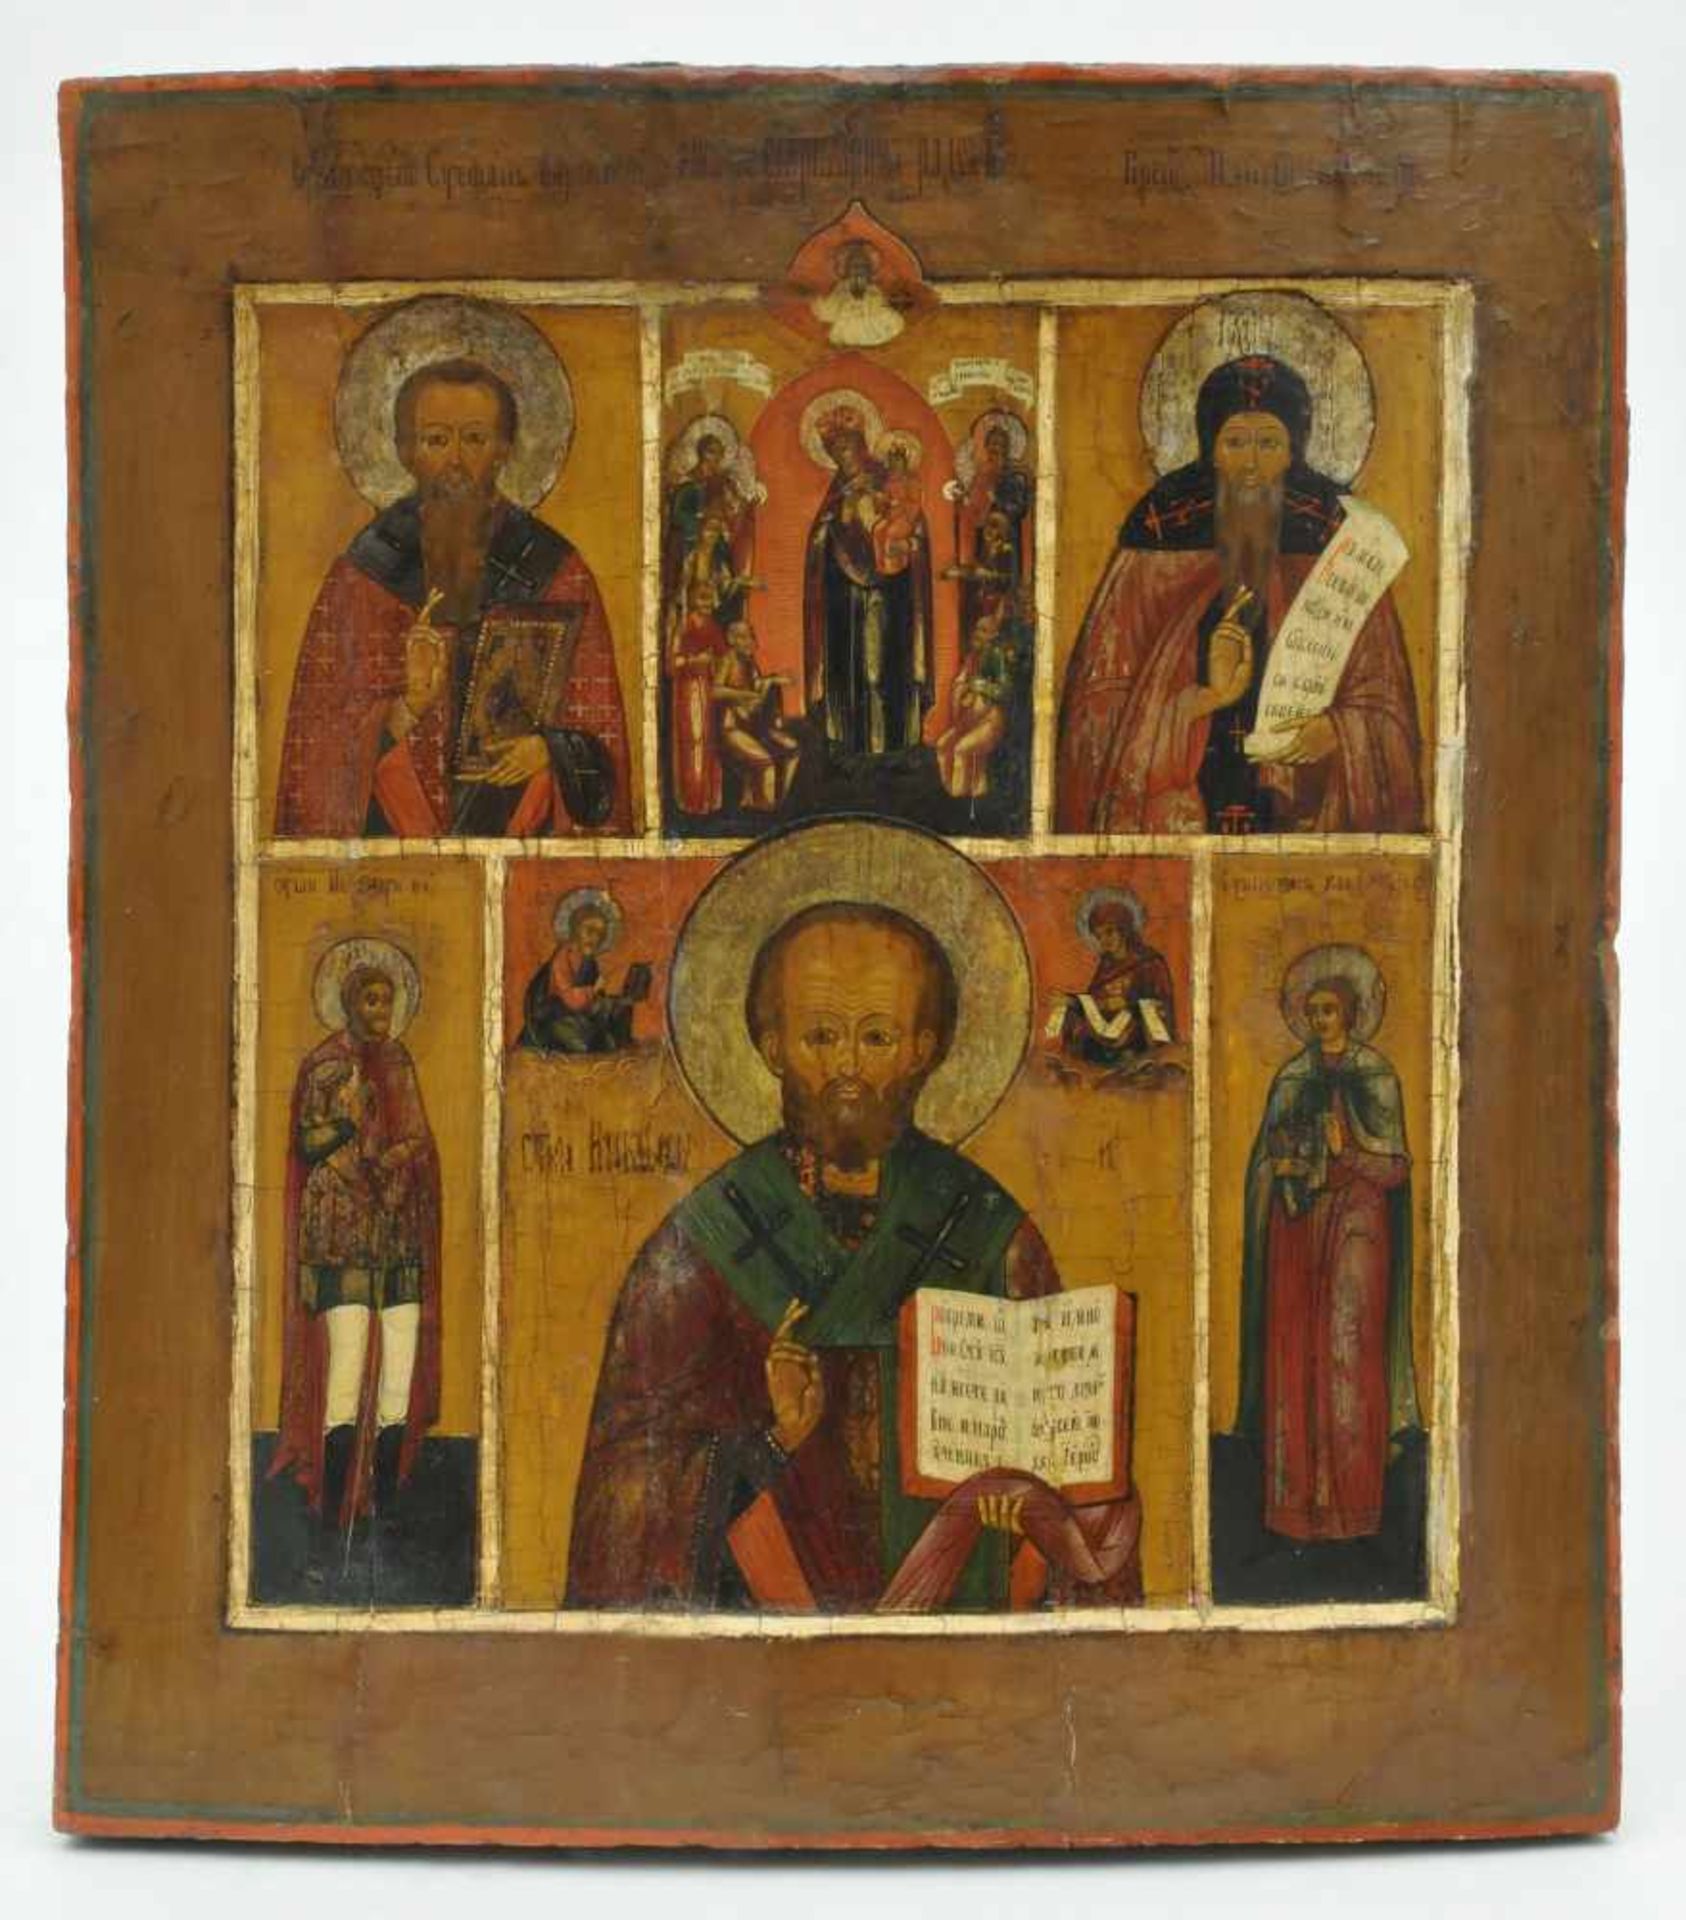 Ikone (Russland 18./19. Jh.) "Nikolaus von Myra umgeben von Heiligen", 43,5 x 39,0 cm, Ei-Tempera